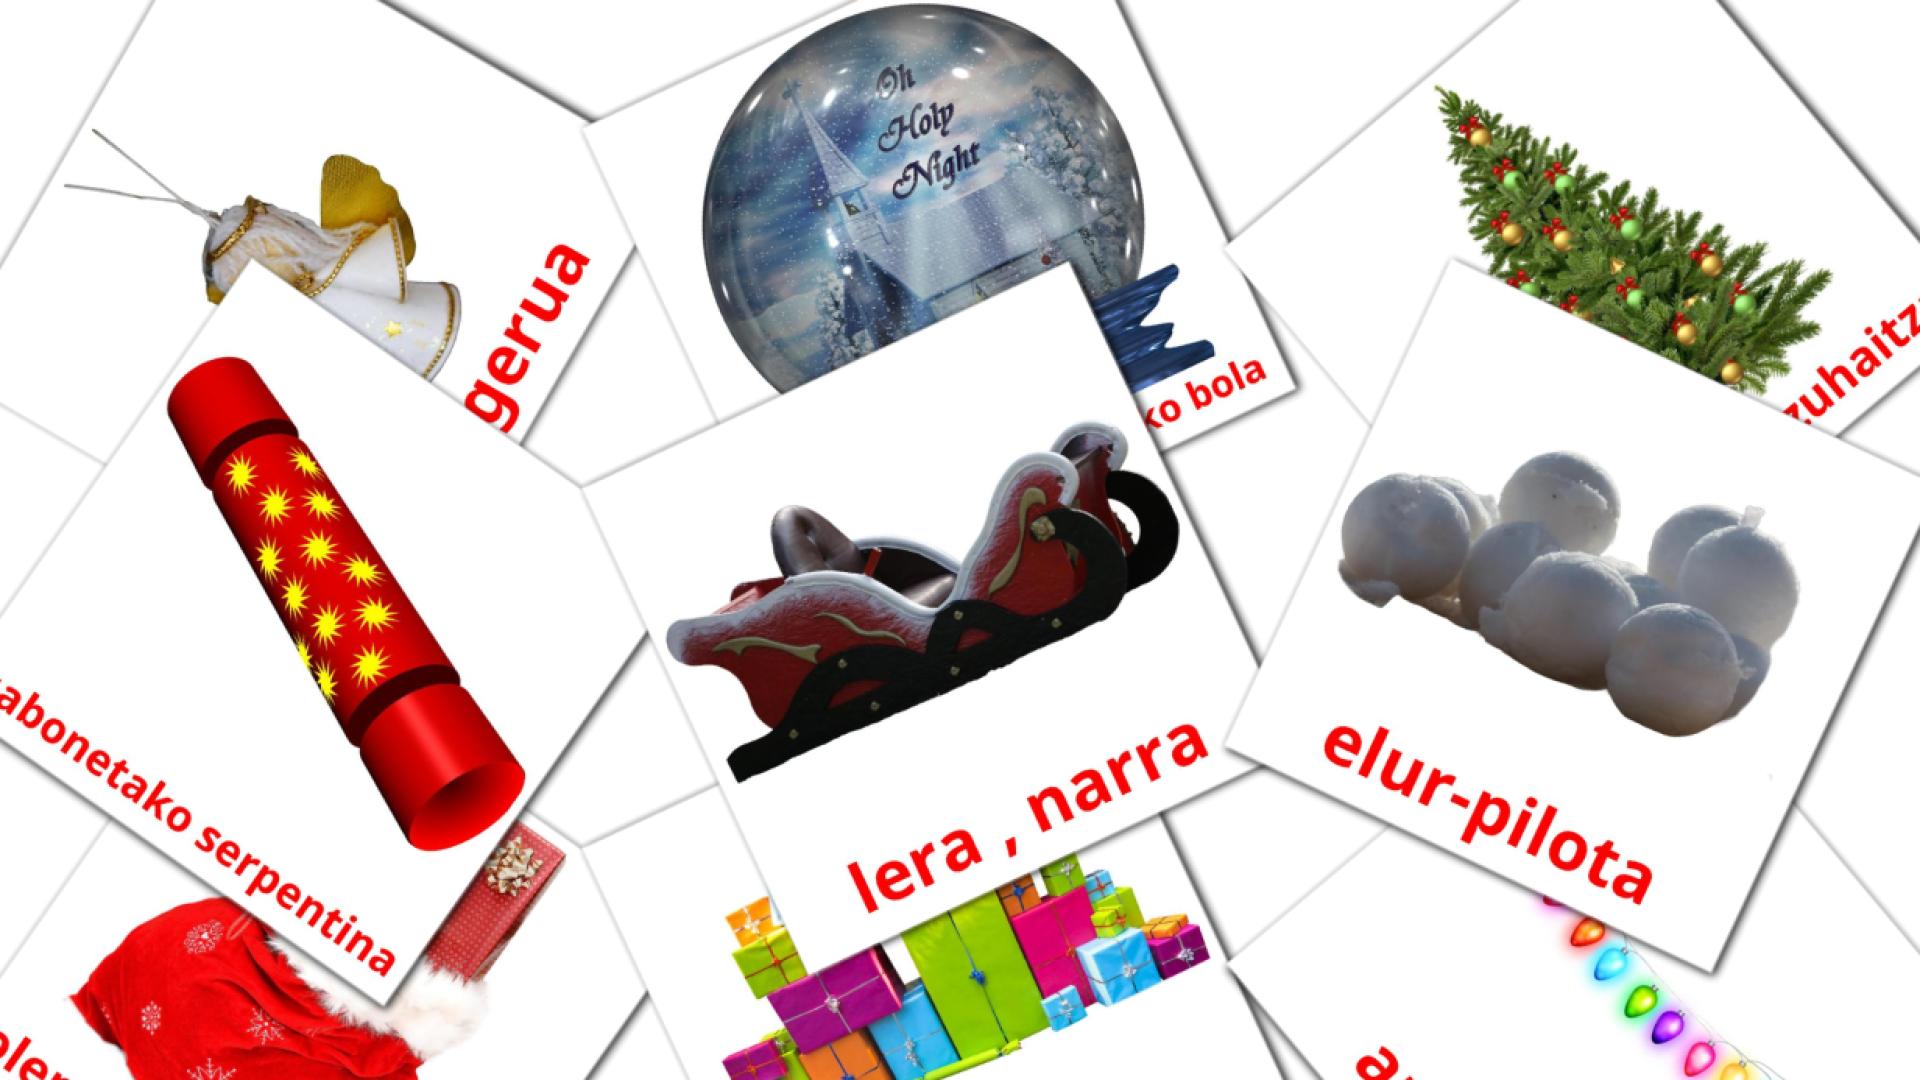 Christmas - basque vocabulary cards